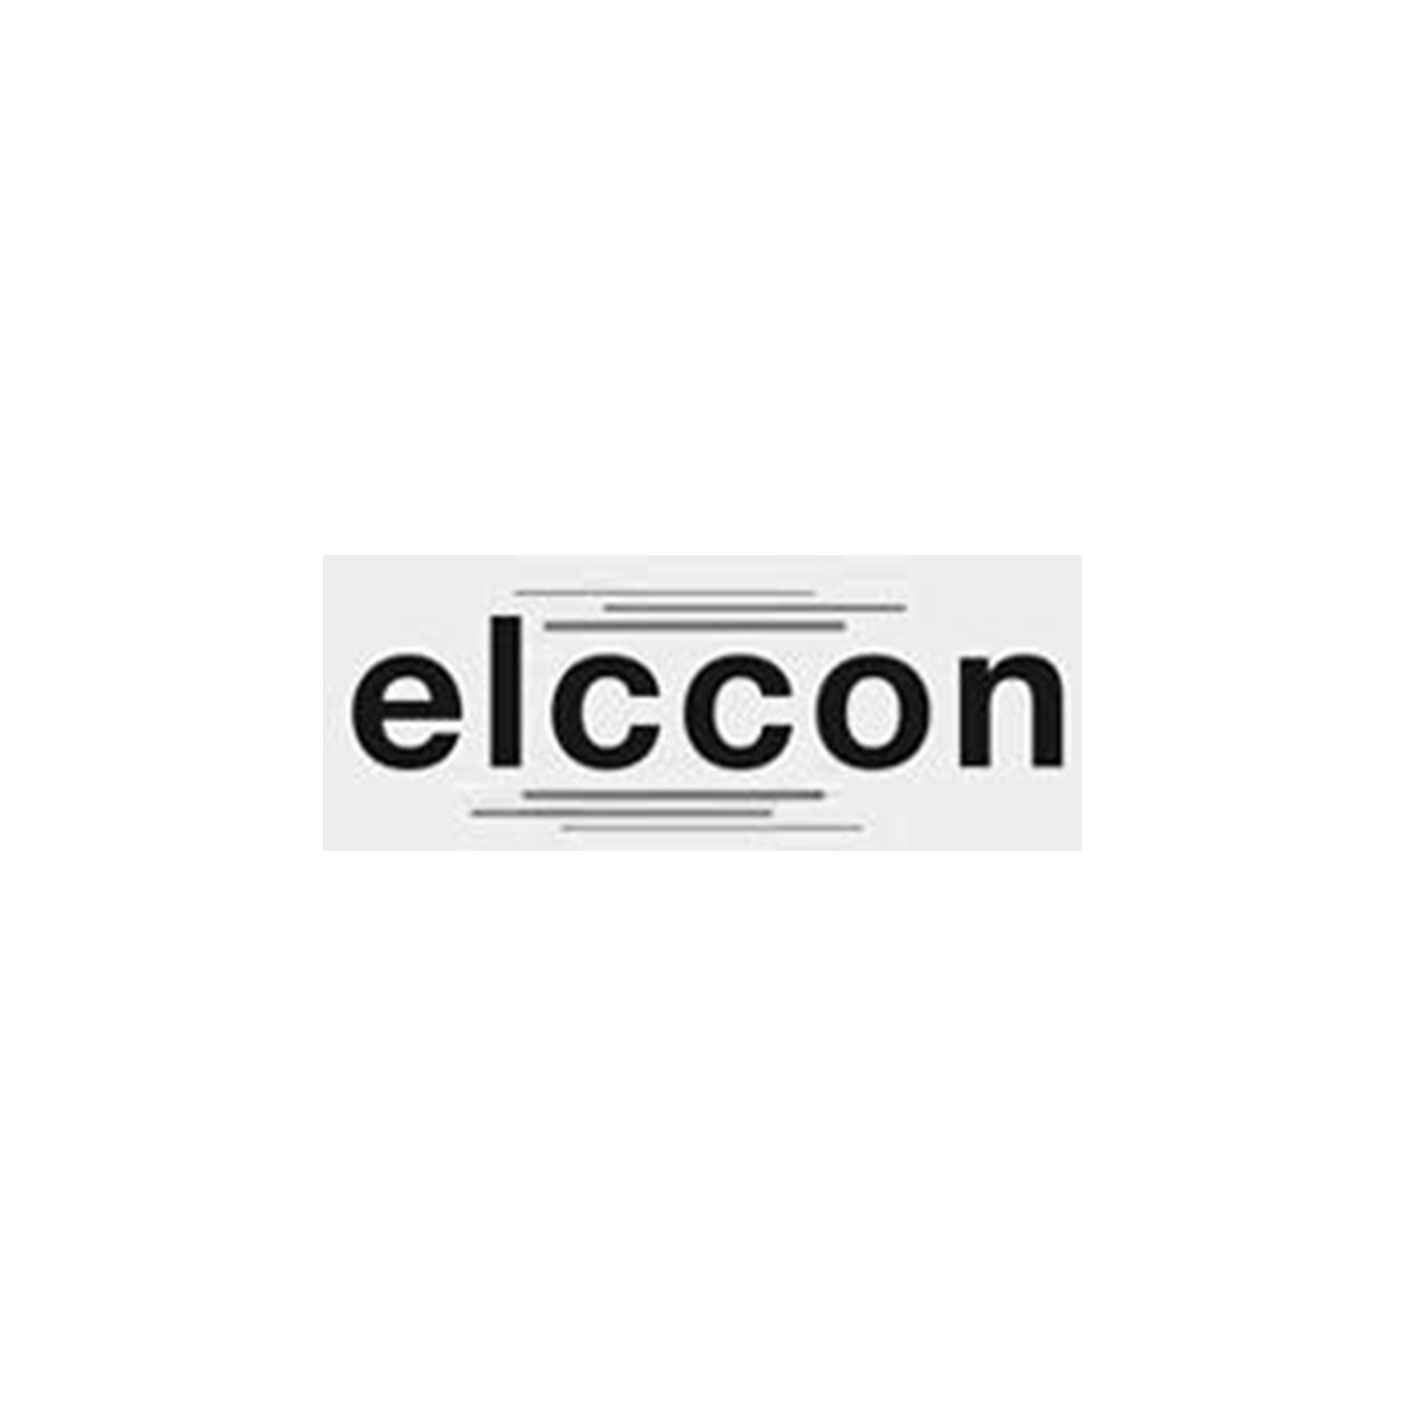 elccon el-nomany change consulting